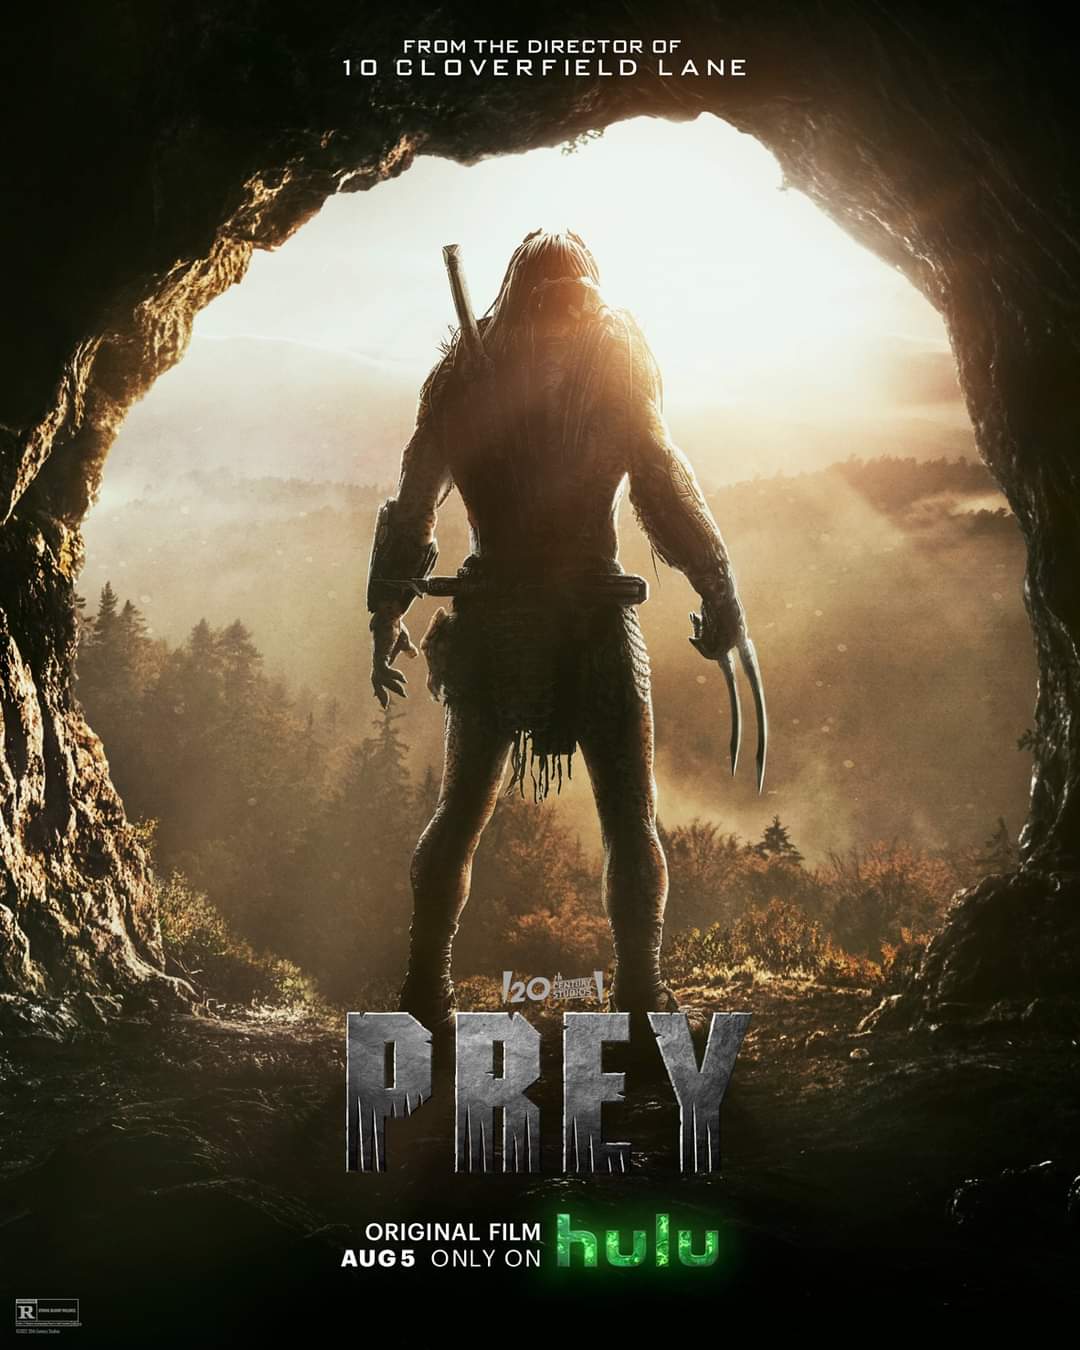 Predator Prequel Prey Gets First Trailer: Watch